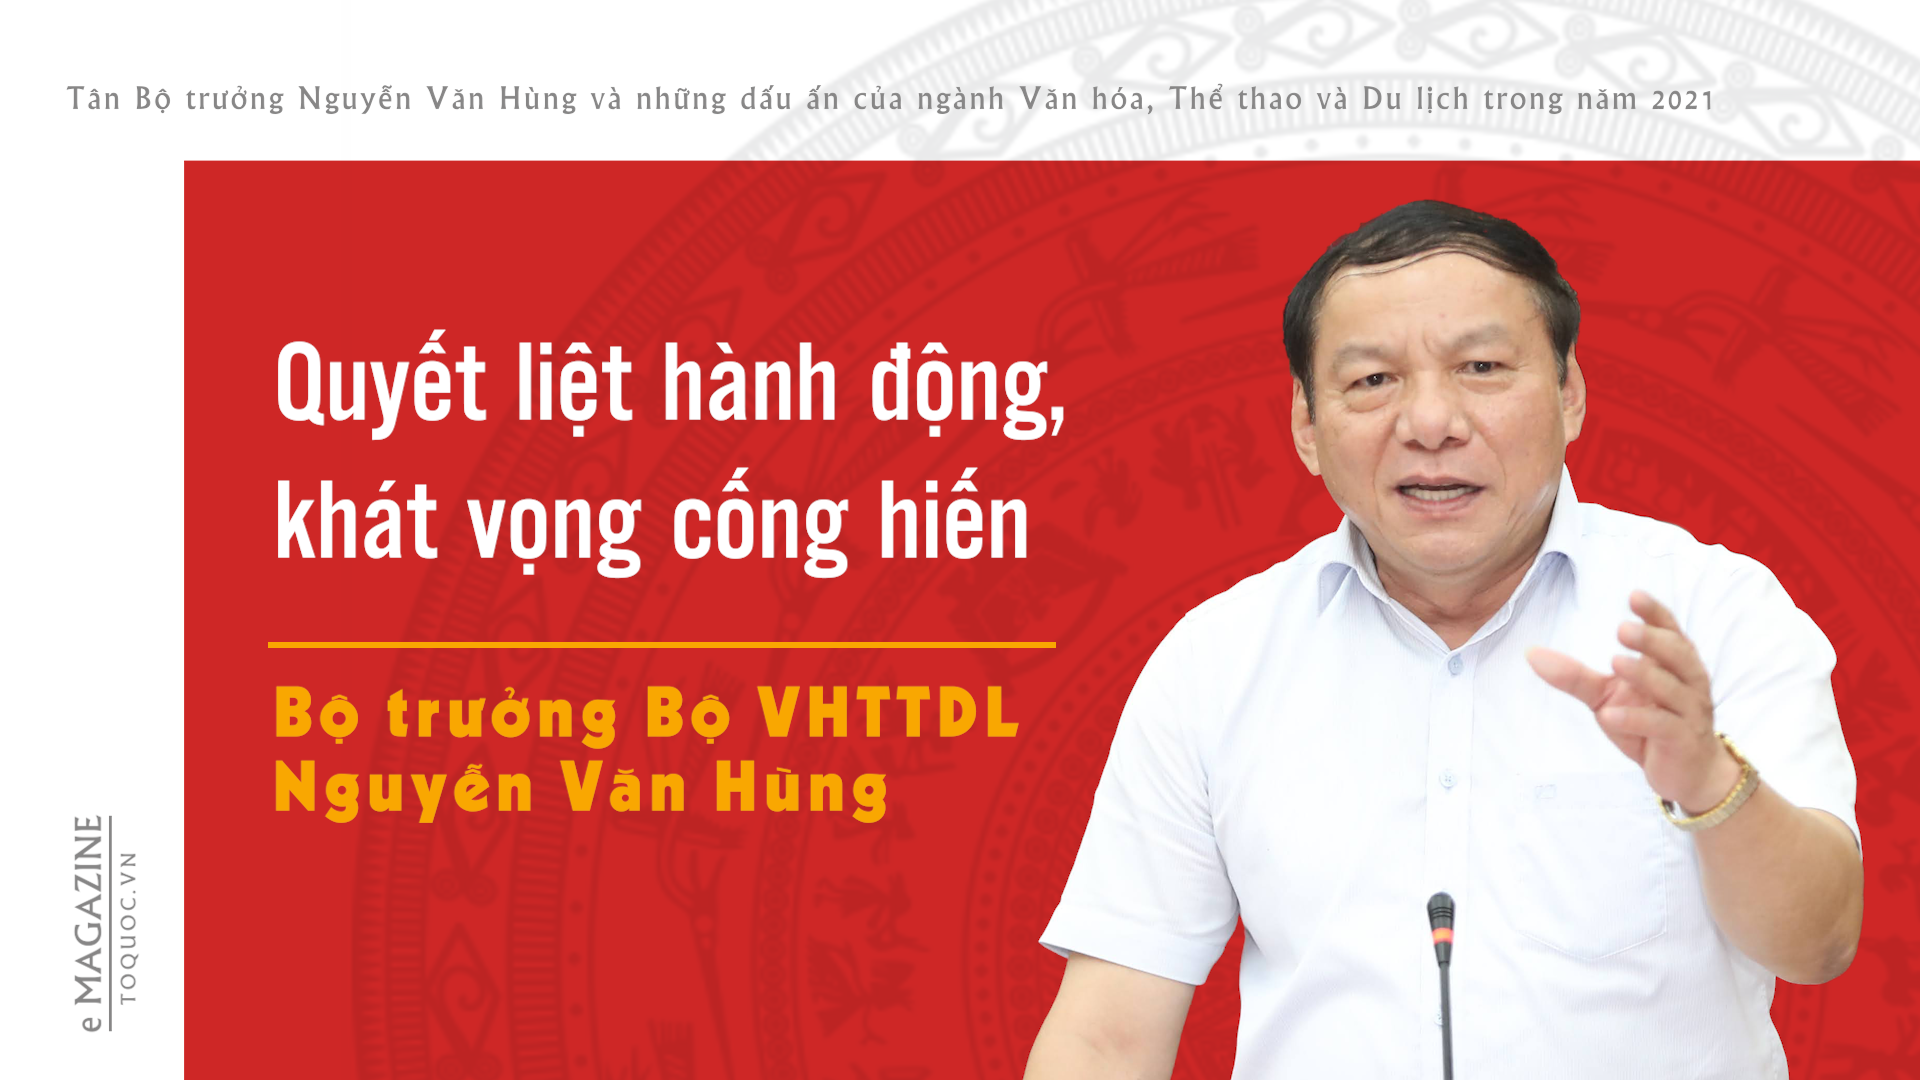 Tân Bộ trưởng Nguyễn Văn Hùng và những dấu ấn của ngành Văn hóa, Thể thao và Du lịch trong năm 2021 - Ảnh 1.